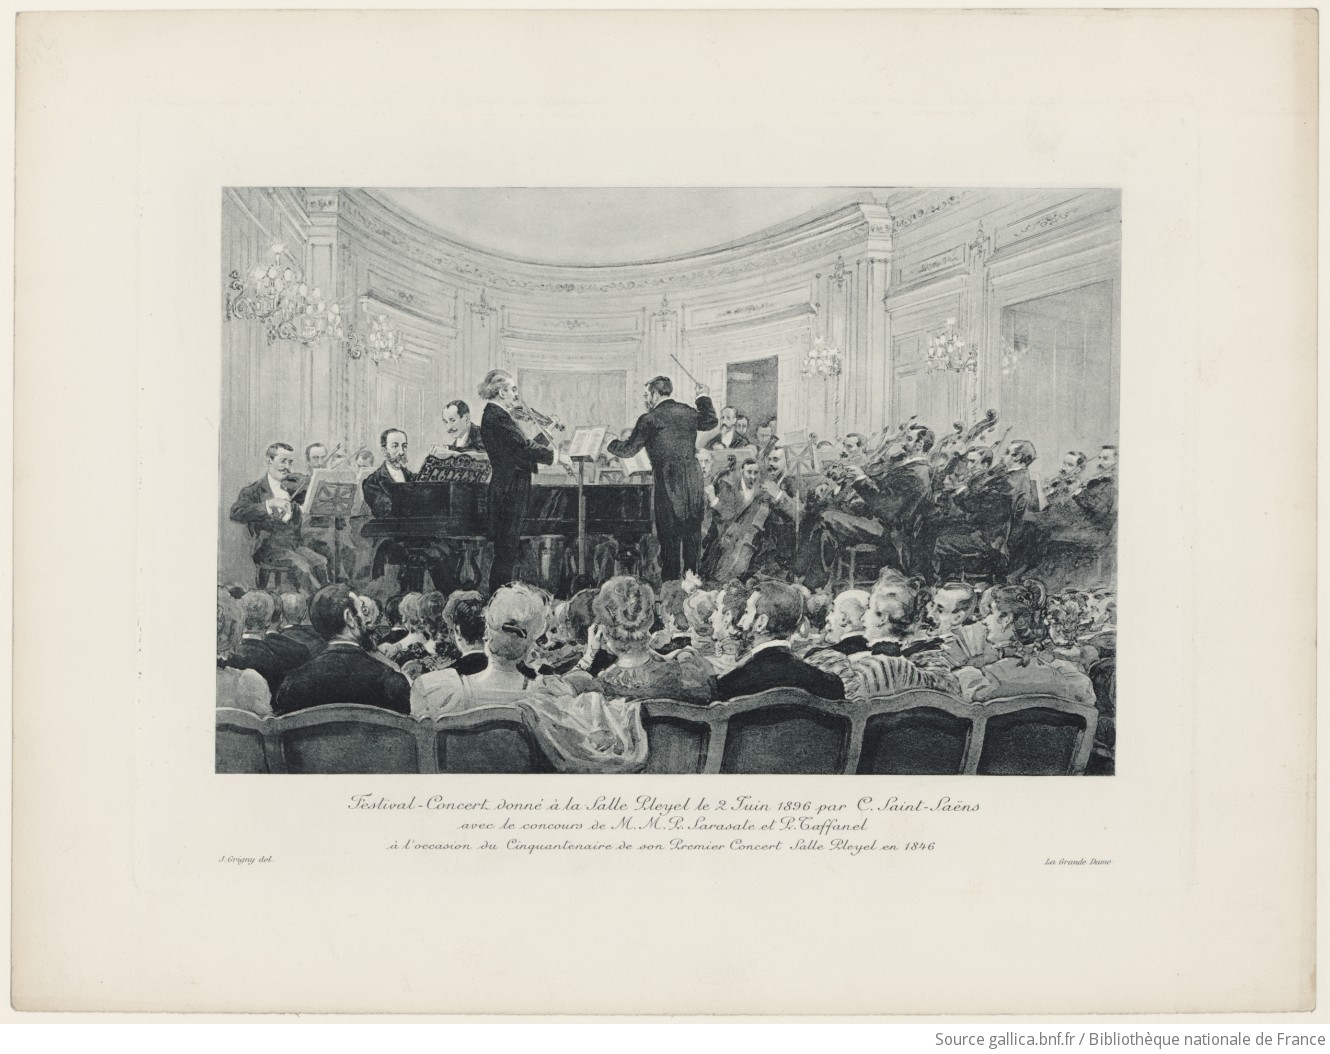 Festival-Concert donné à la Salle Pleyel le 2 juin 1896 par C. Saint-Saëns, avec le concours de M.M. P. Sarasate et P. Taffanel, à l'occasion du cinquantenaire de son premier concert Salle Pleyel en 1846 / J. Grigny del.